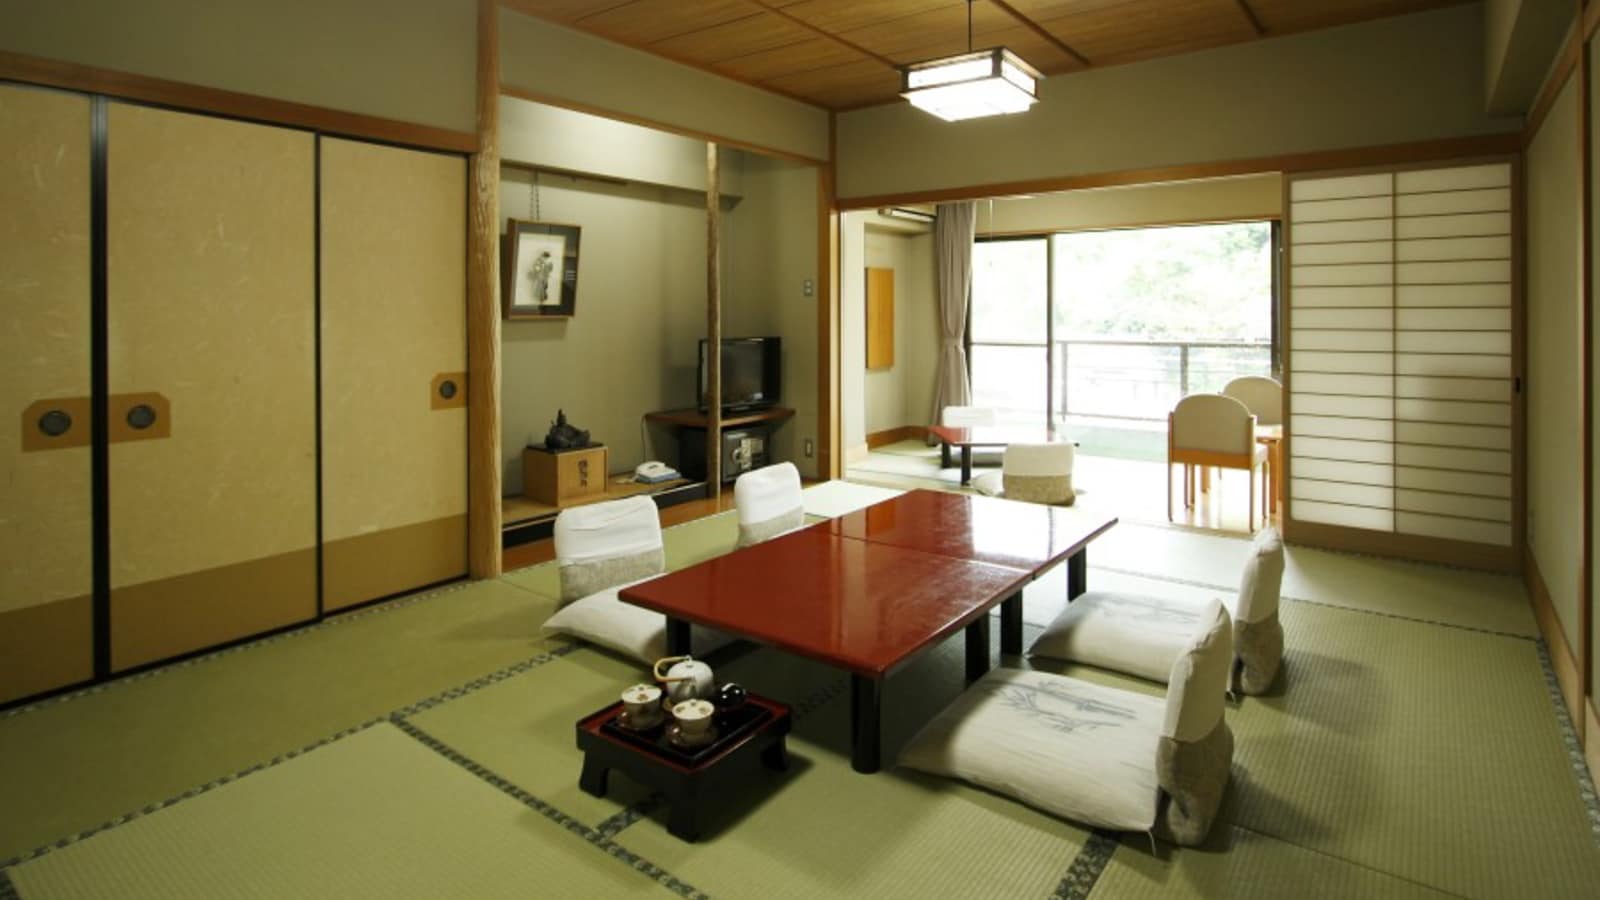 [ชั้น 3 (12 เสื่อทาทามิ + 4.5 เสื่อทาทามิ) ห้องสไตล์ญี่ปุ่นพร้อมห้องถัดไป] บริการอาหารในห้องพักและนำสัตว์เลี้ยงเข้าพักได้